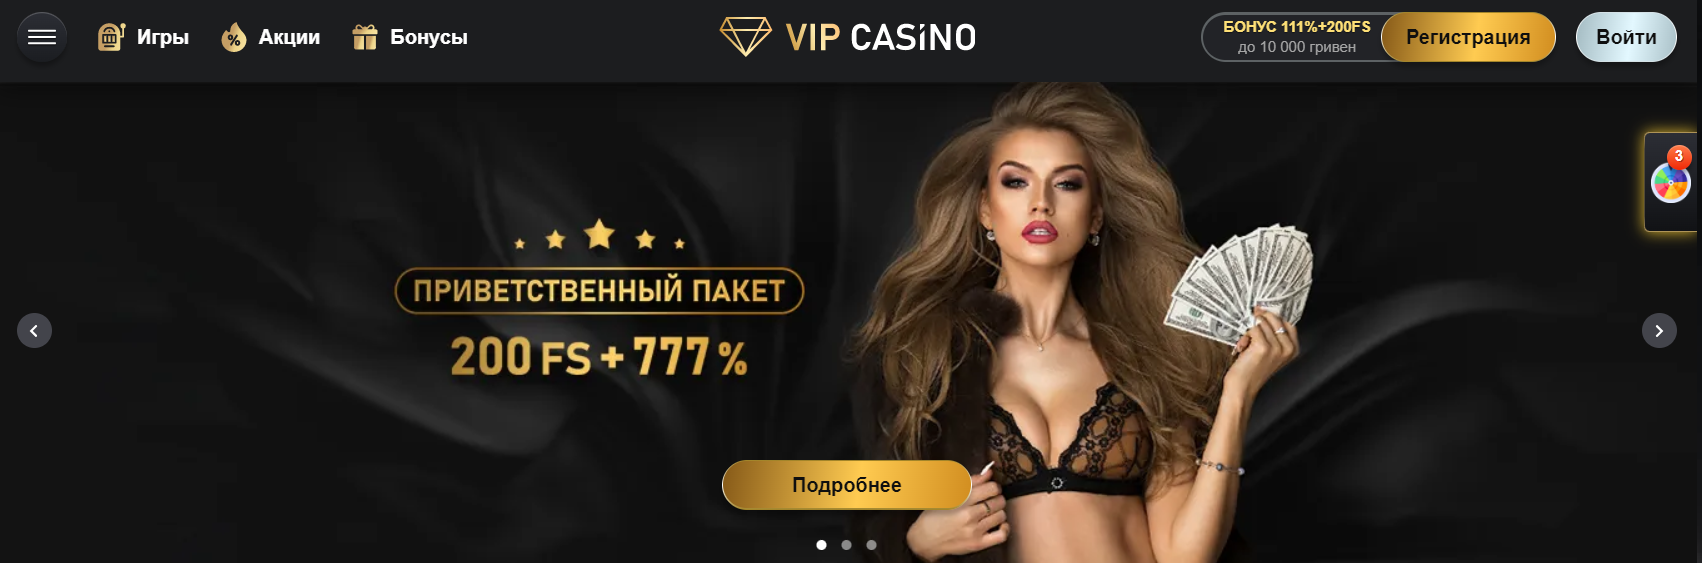 Огляд найпопулярнішої платформи України VIP Casino